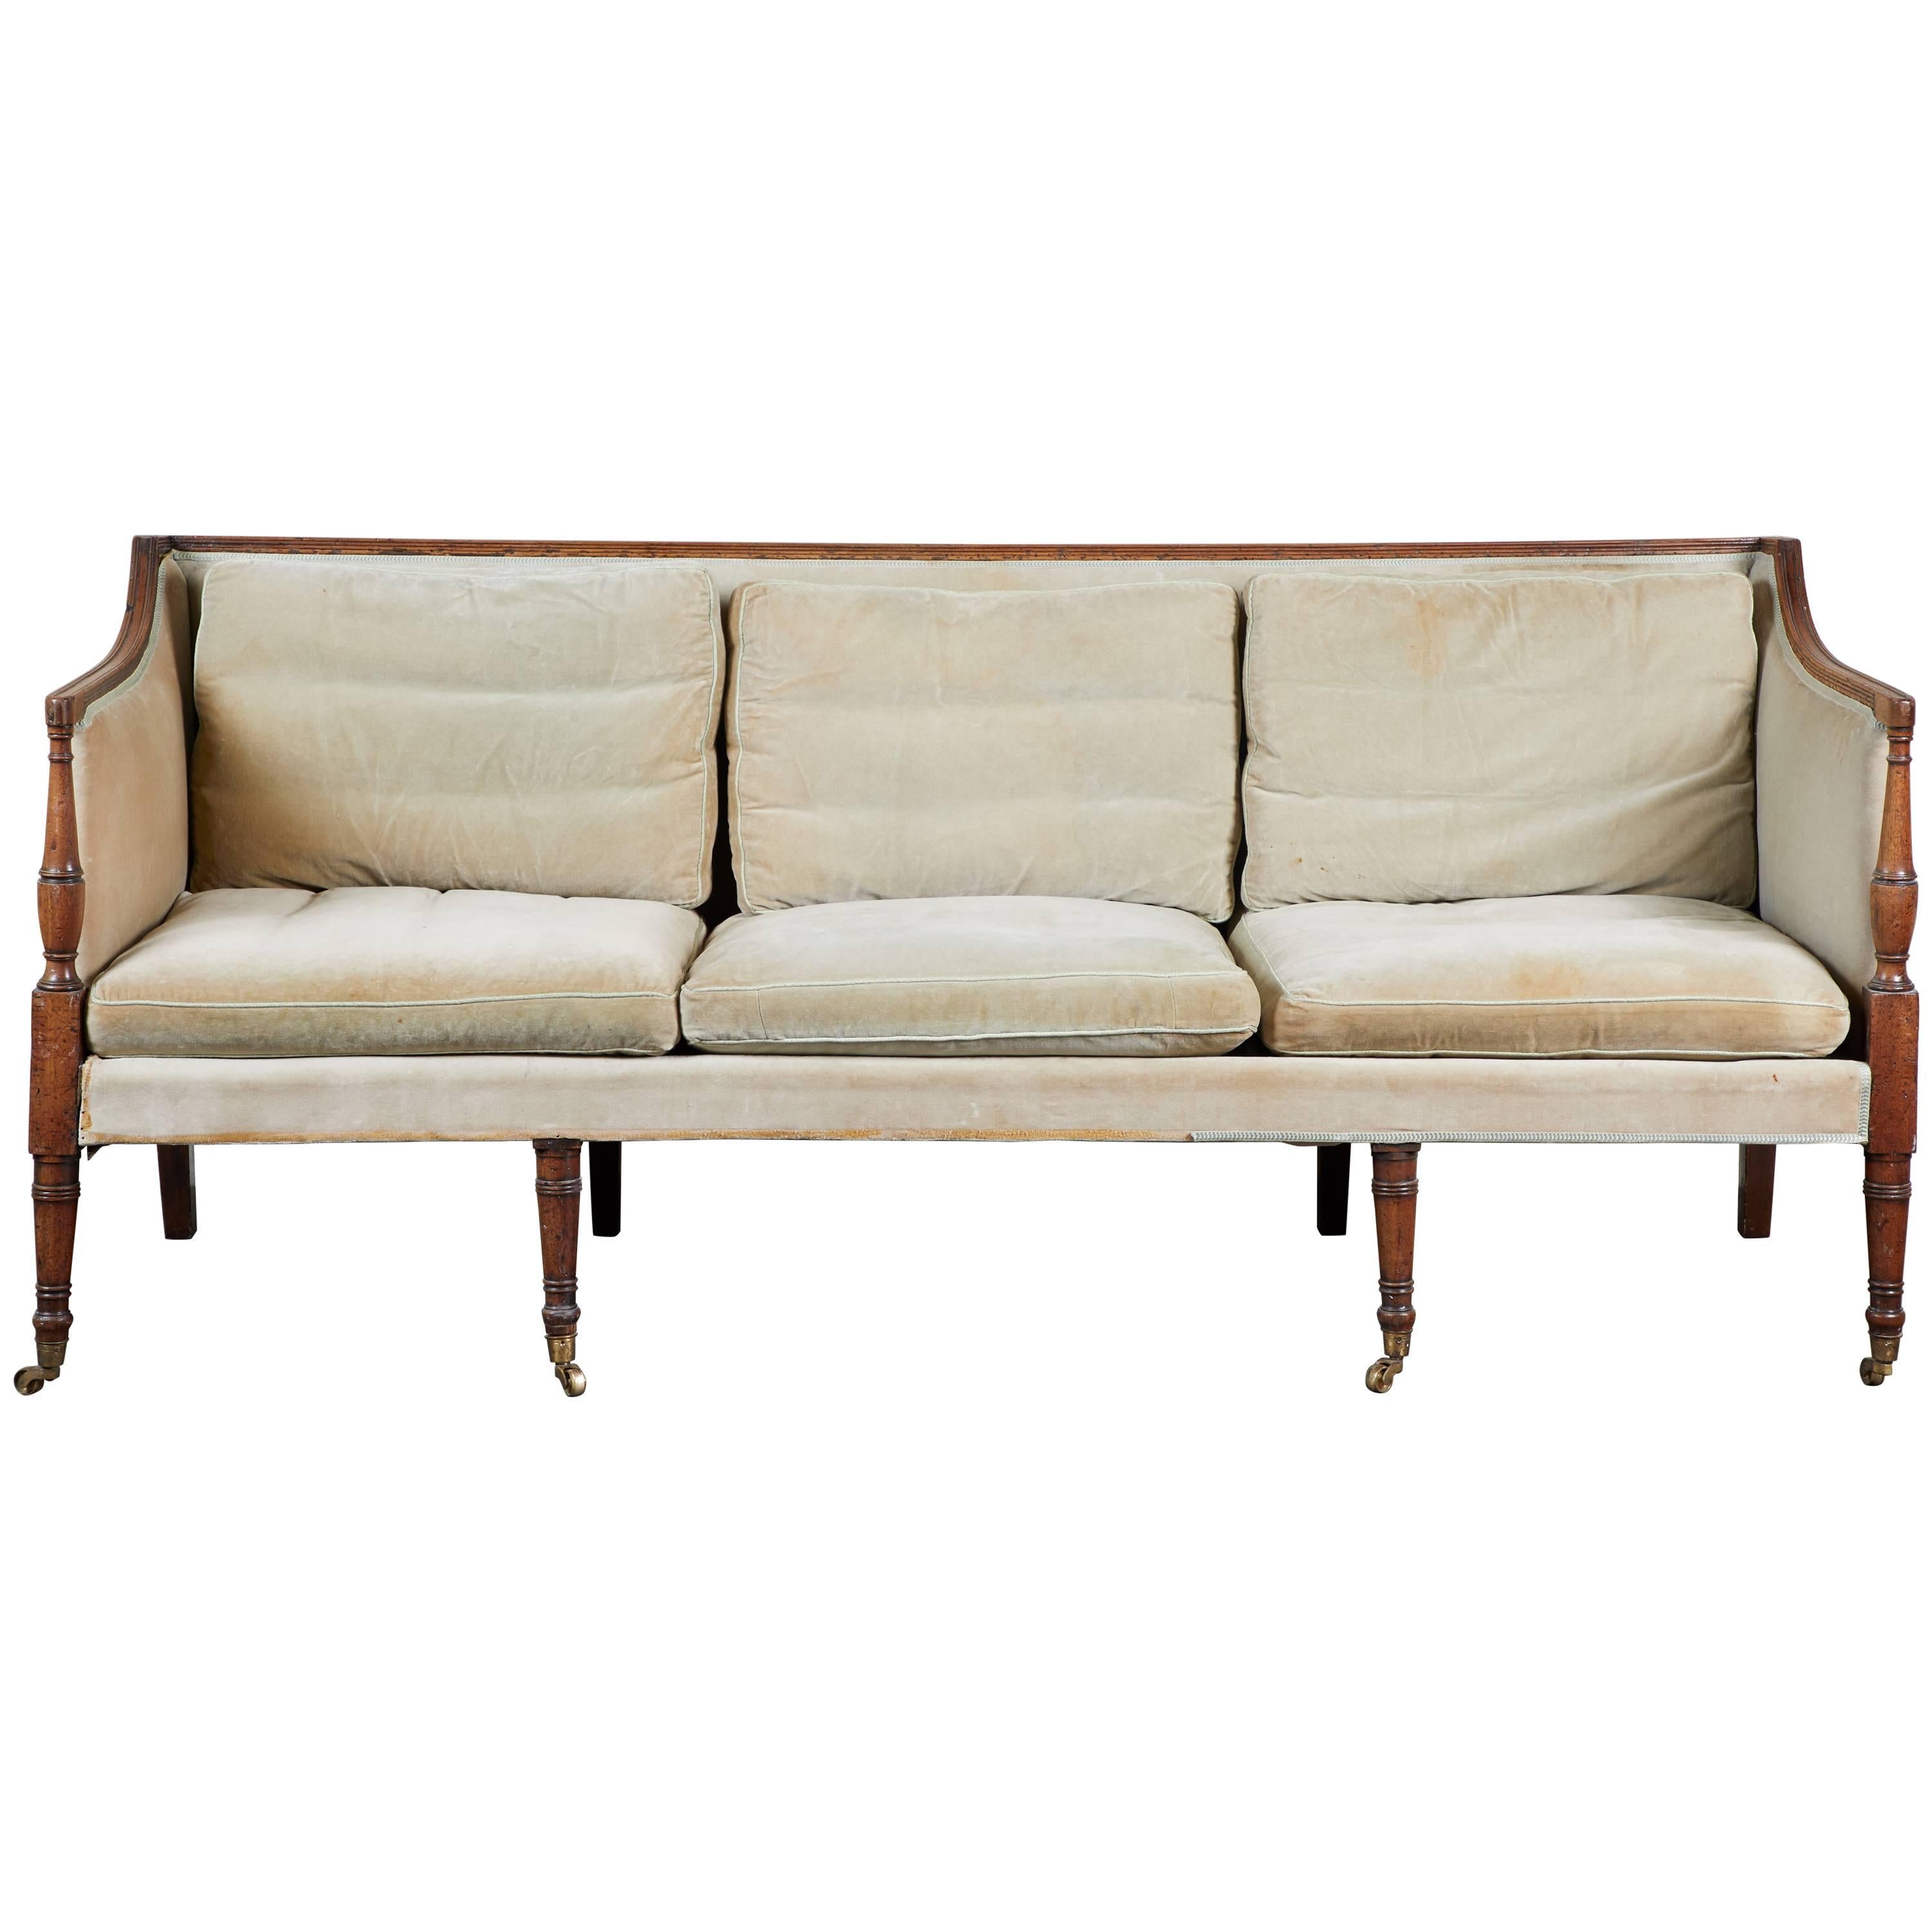 19th Century English Regency Mahogany Trimmed Sofa